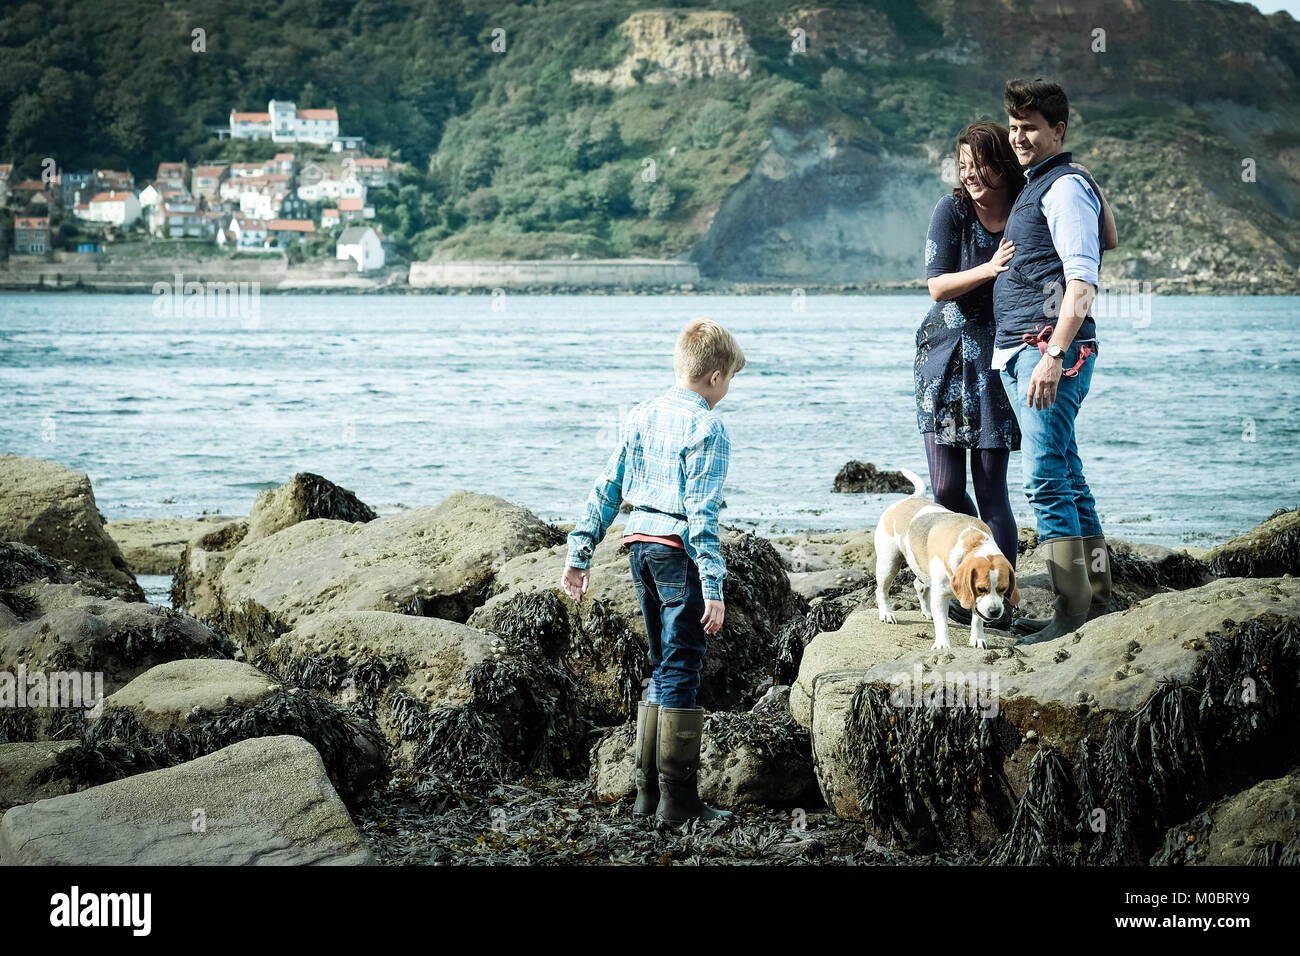 Garçon jouant sur les rochers avec ses parents et chien de famille. Famille jouissant de leurs vacances sur la côte britannique, littoral, à Runswick Bay, dans le Yorkshire. Banque D'Images